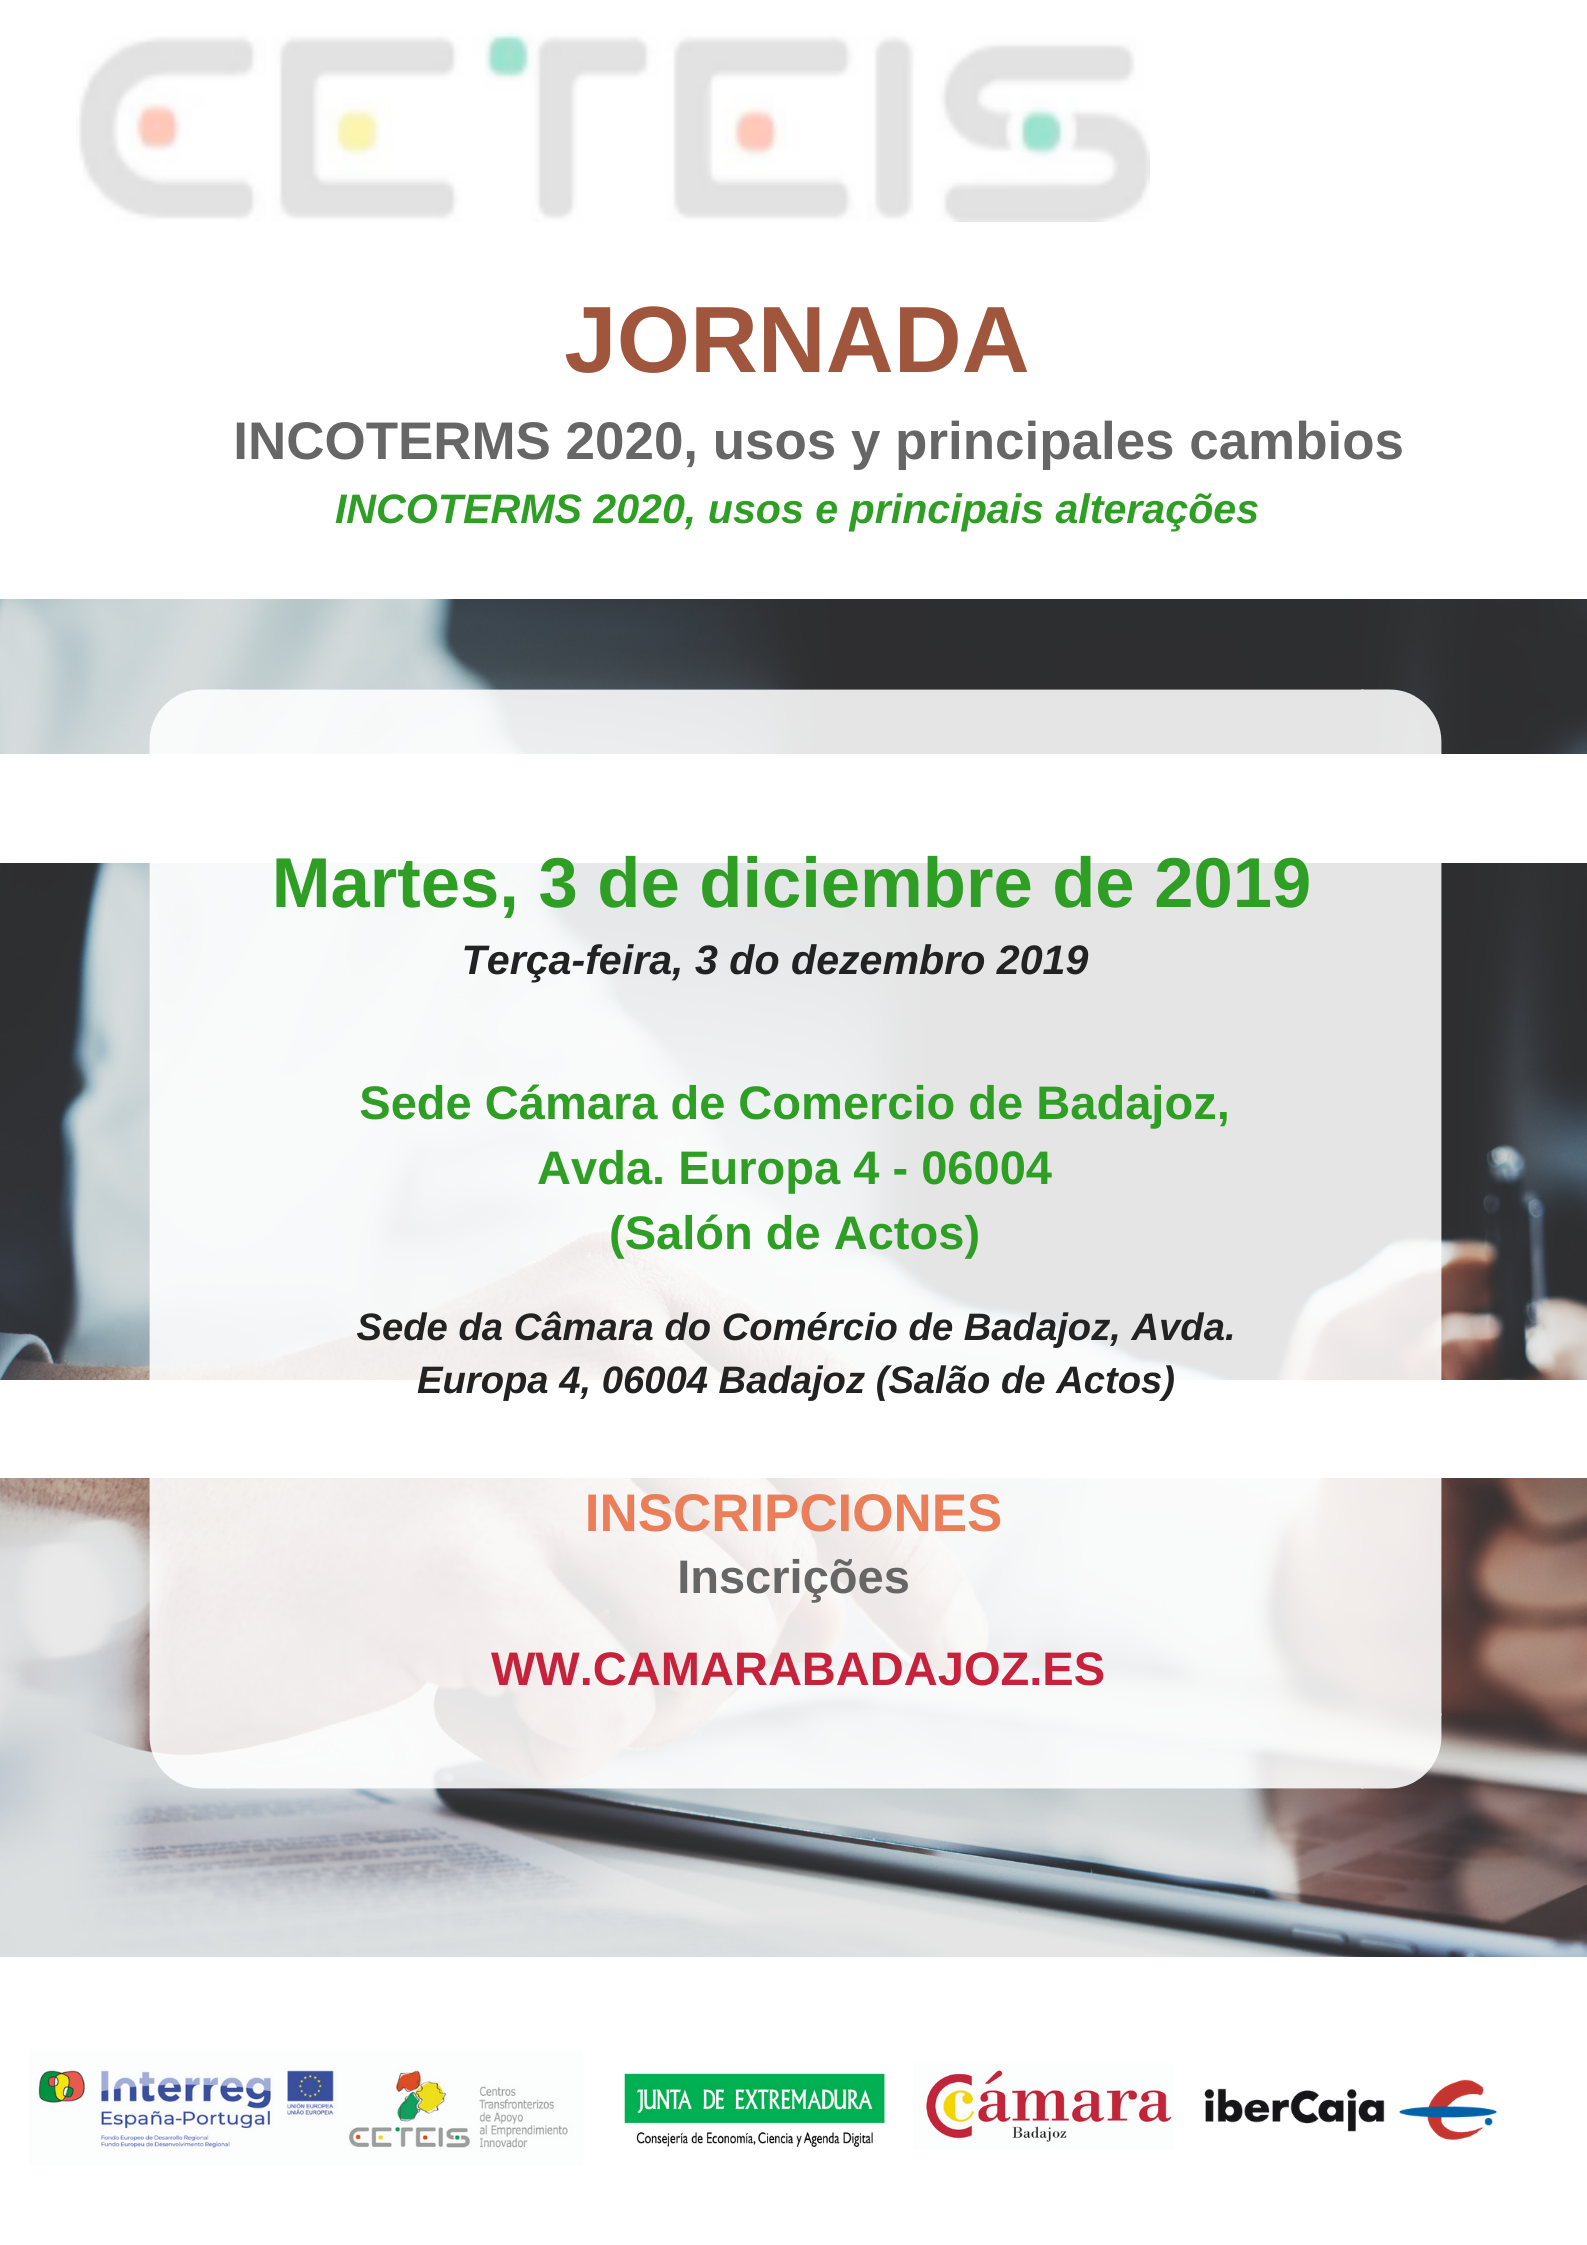 BADAJOZ- Jornada de INCOTERMS 2020, usos y principales cambios - CETEIS